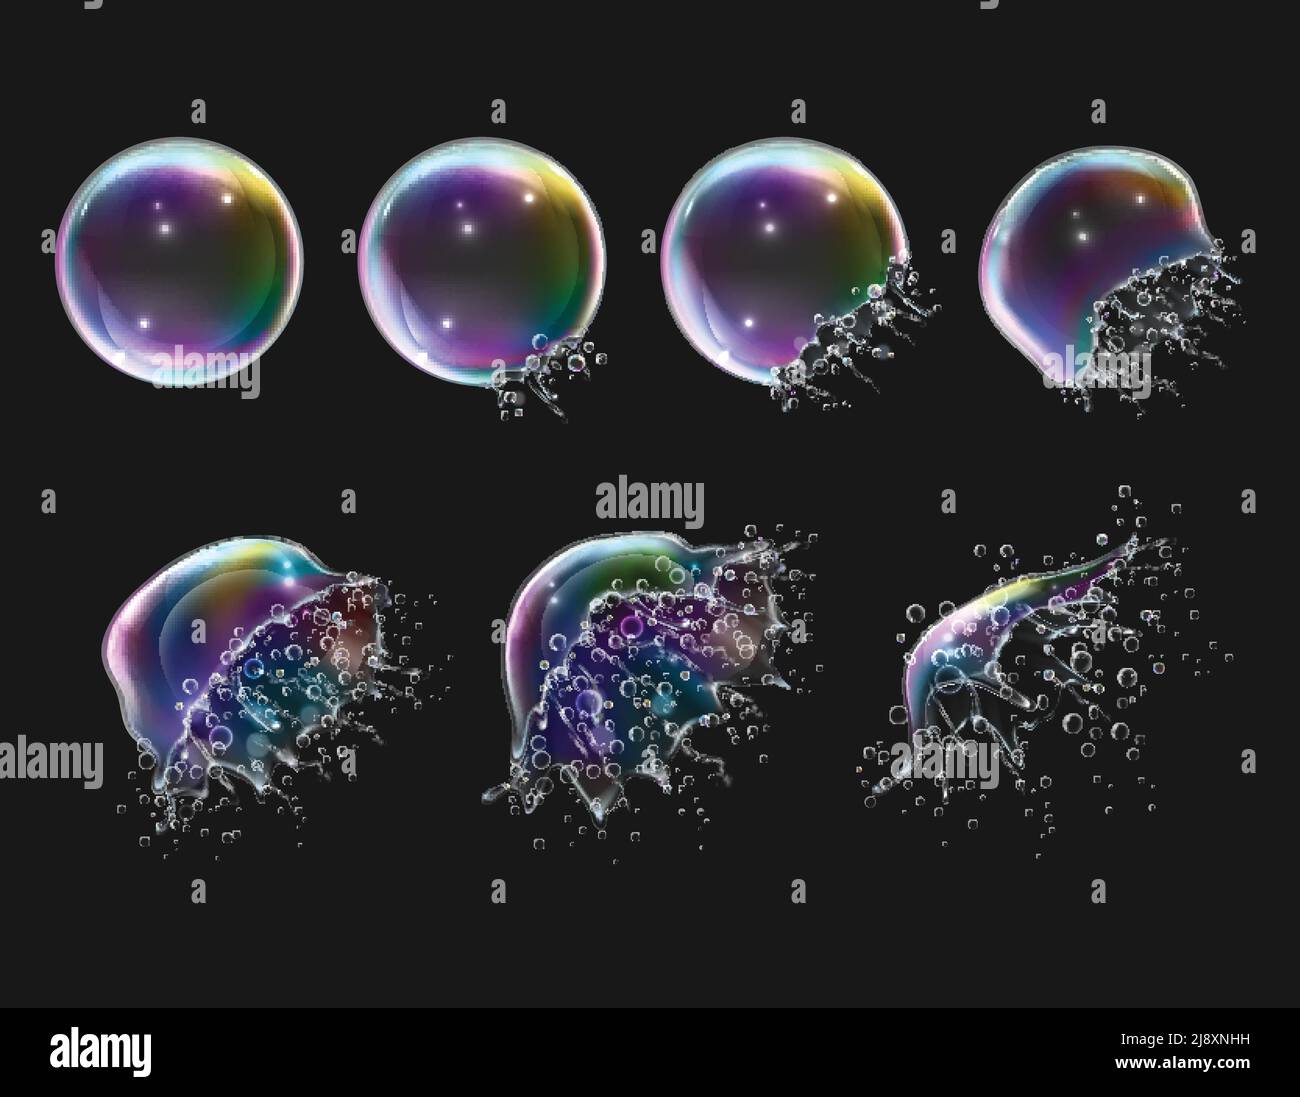 Fasi di esplosione di realistiche bolle di sapone lucido rotondo arcobaleno immagine vettoriale isolata con sfondo nero Illustrazione Vettoriale